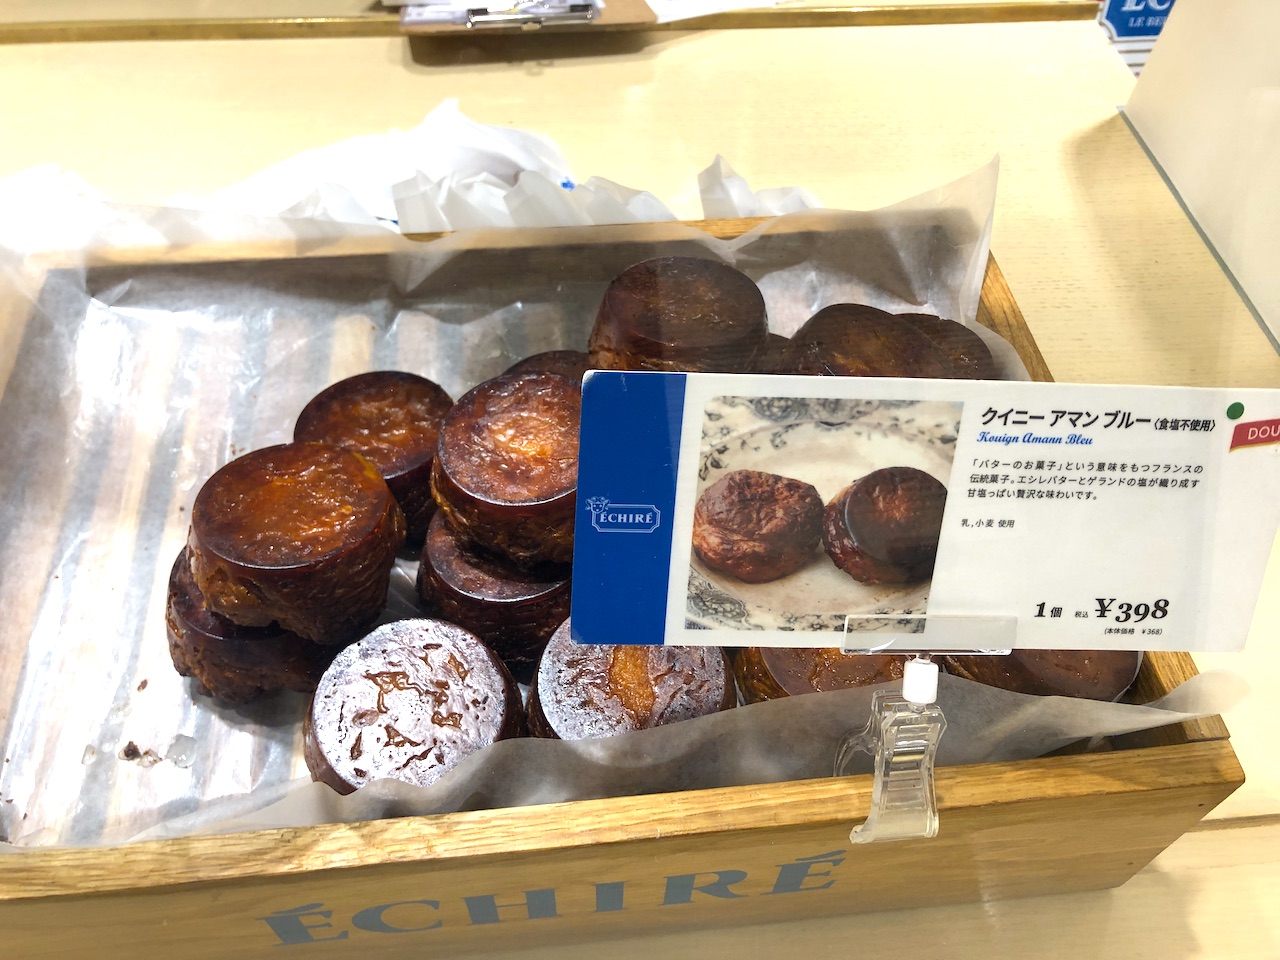 大阪でしか買えない 一生に一度は食べて欲しい エシレの絶品クイニーアマン エシレ マルシェ オ ブール Tabizine 人生に旅心を